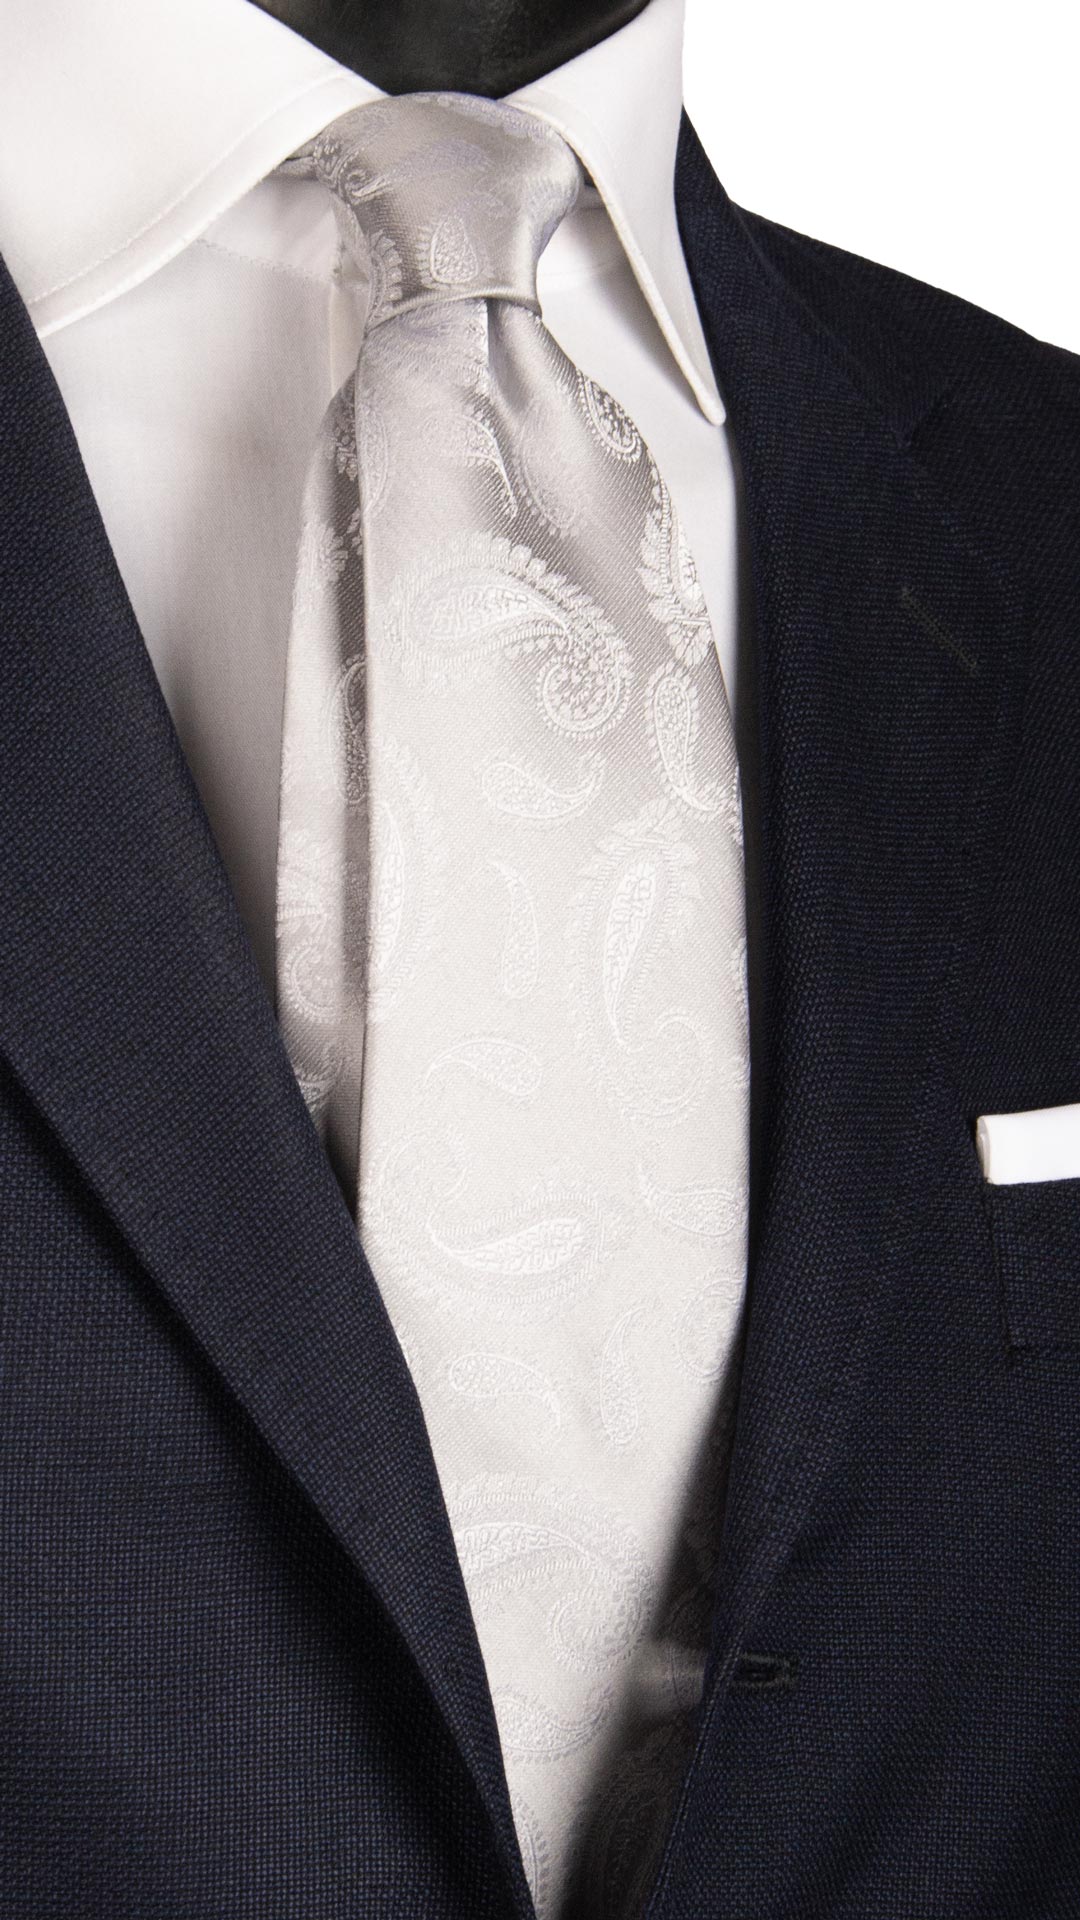 Cravatta da Cerimonia di Seta Grigio Argento Paisley Tono su Tono CY6718 Made in Italy Graffeo Cravatte